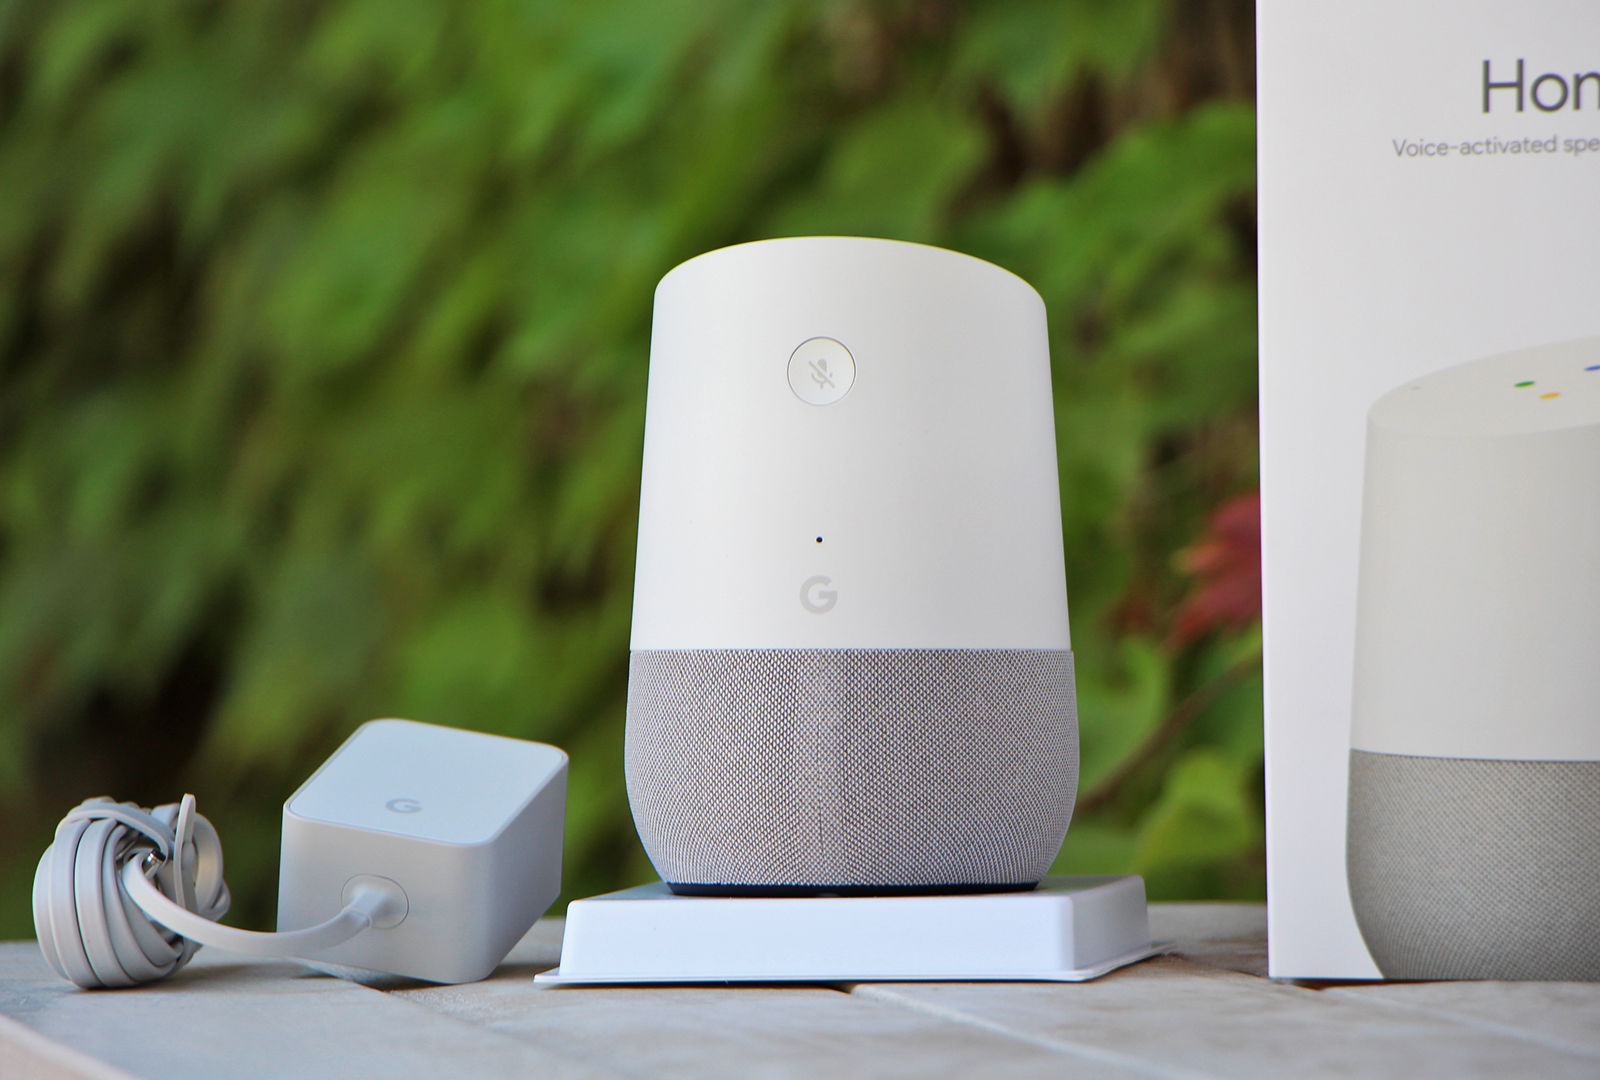 Google Home 智能音箱体验:可能除了亚马逊 Echo，没有谁比它更优秀